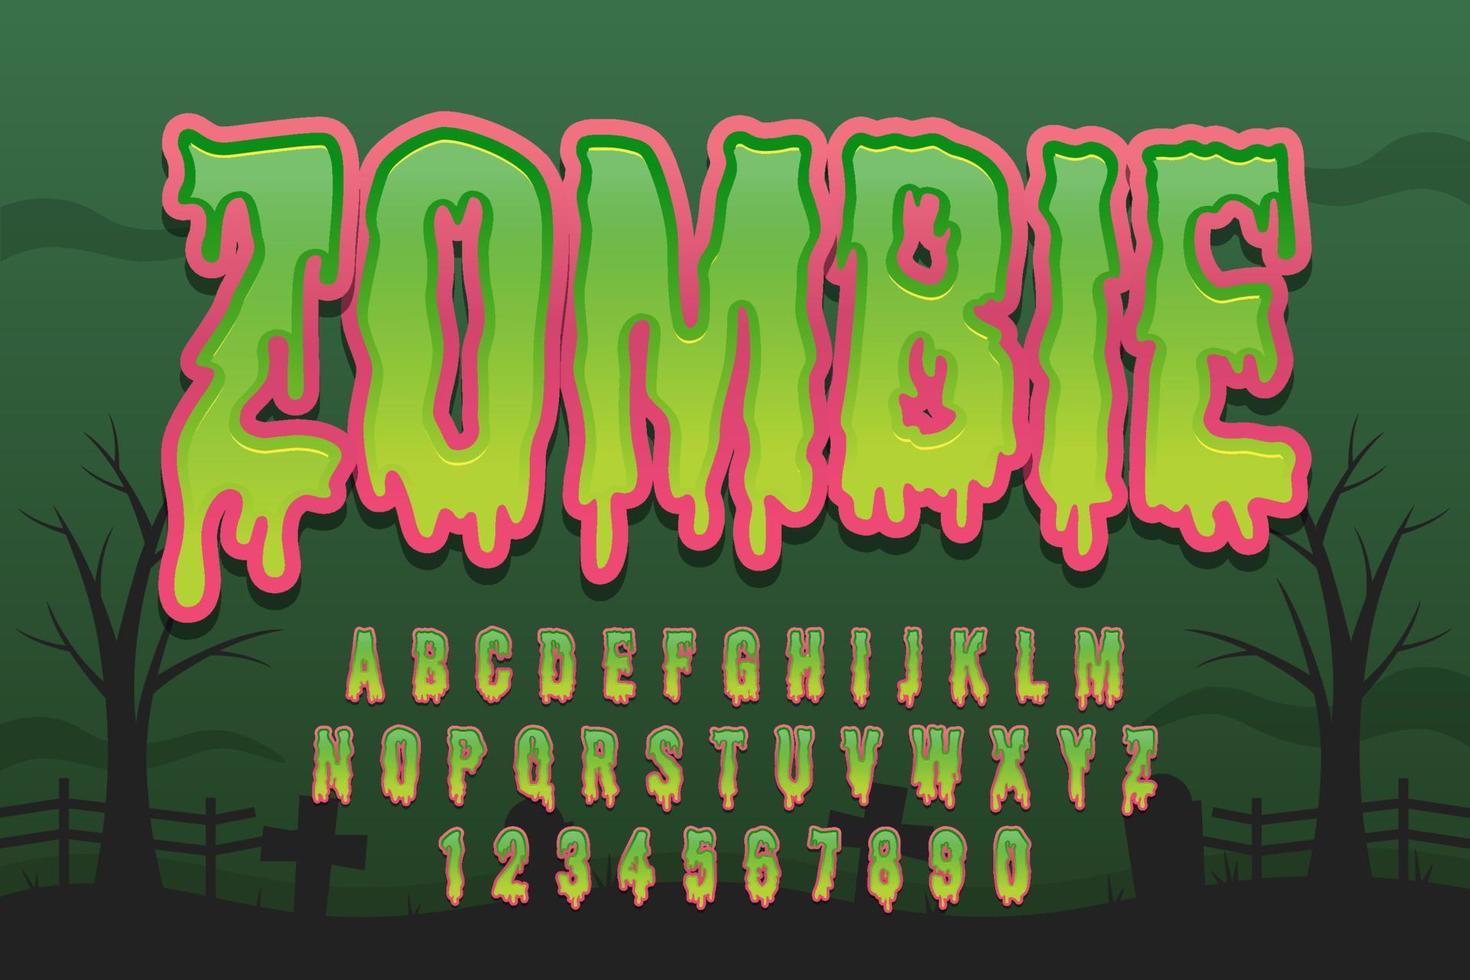 dekorative zombieschrift und alphabetvektor vektor